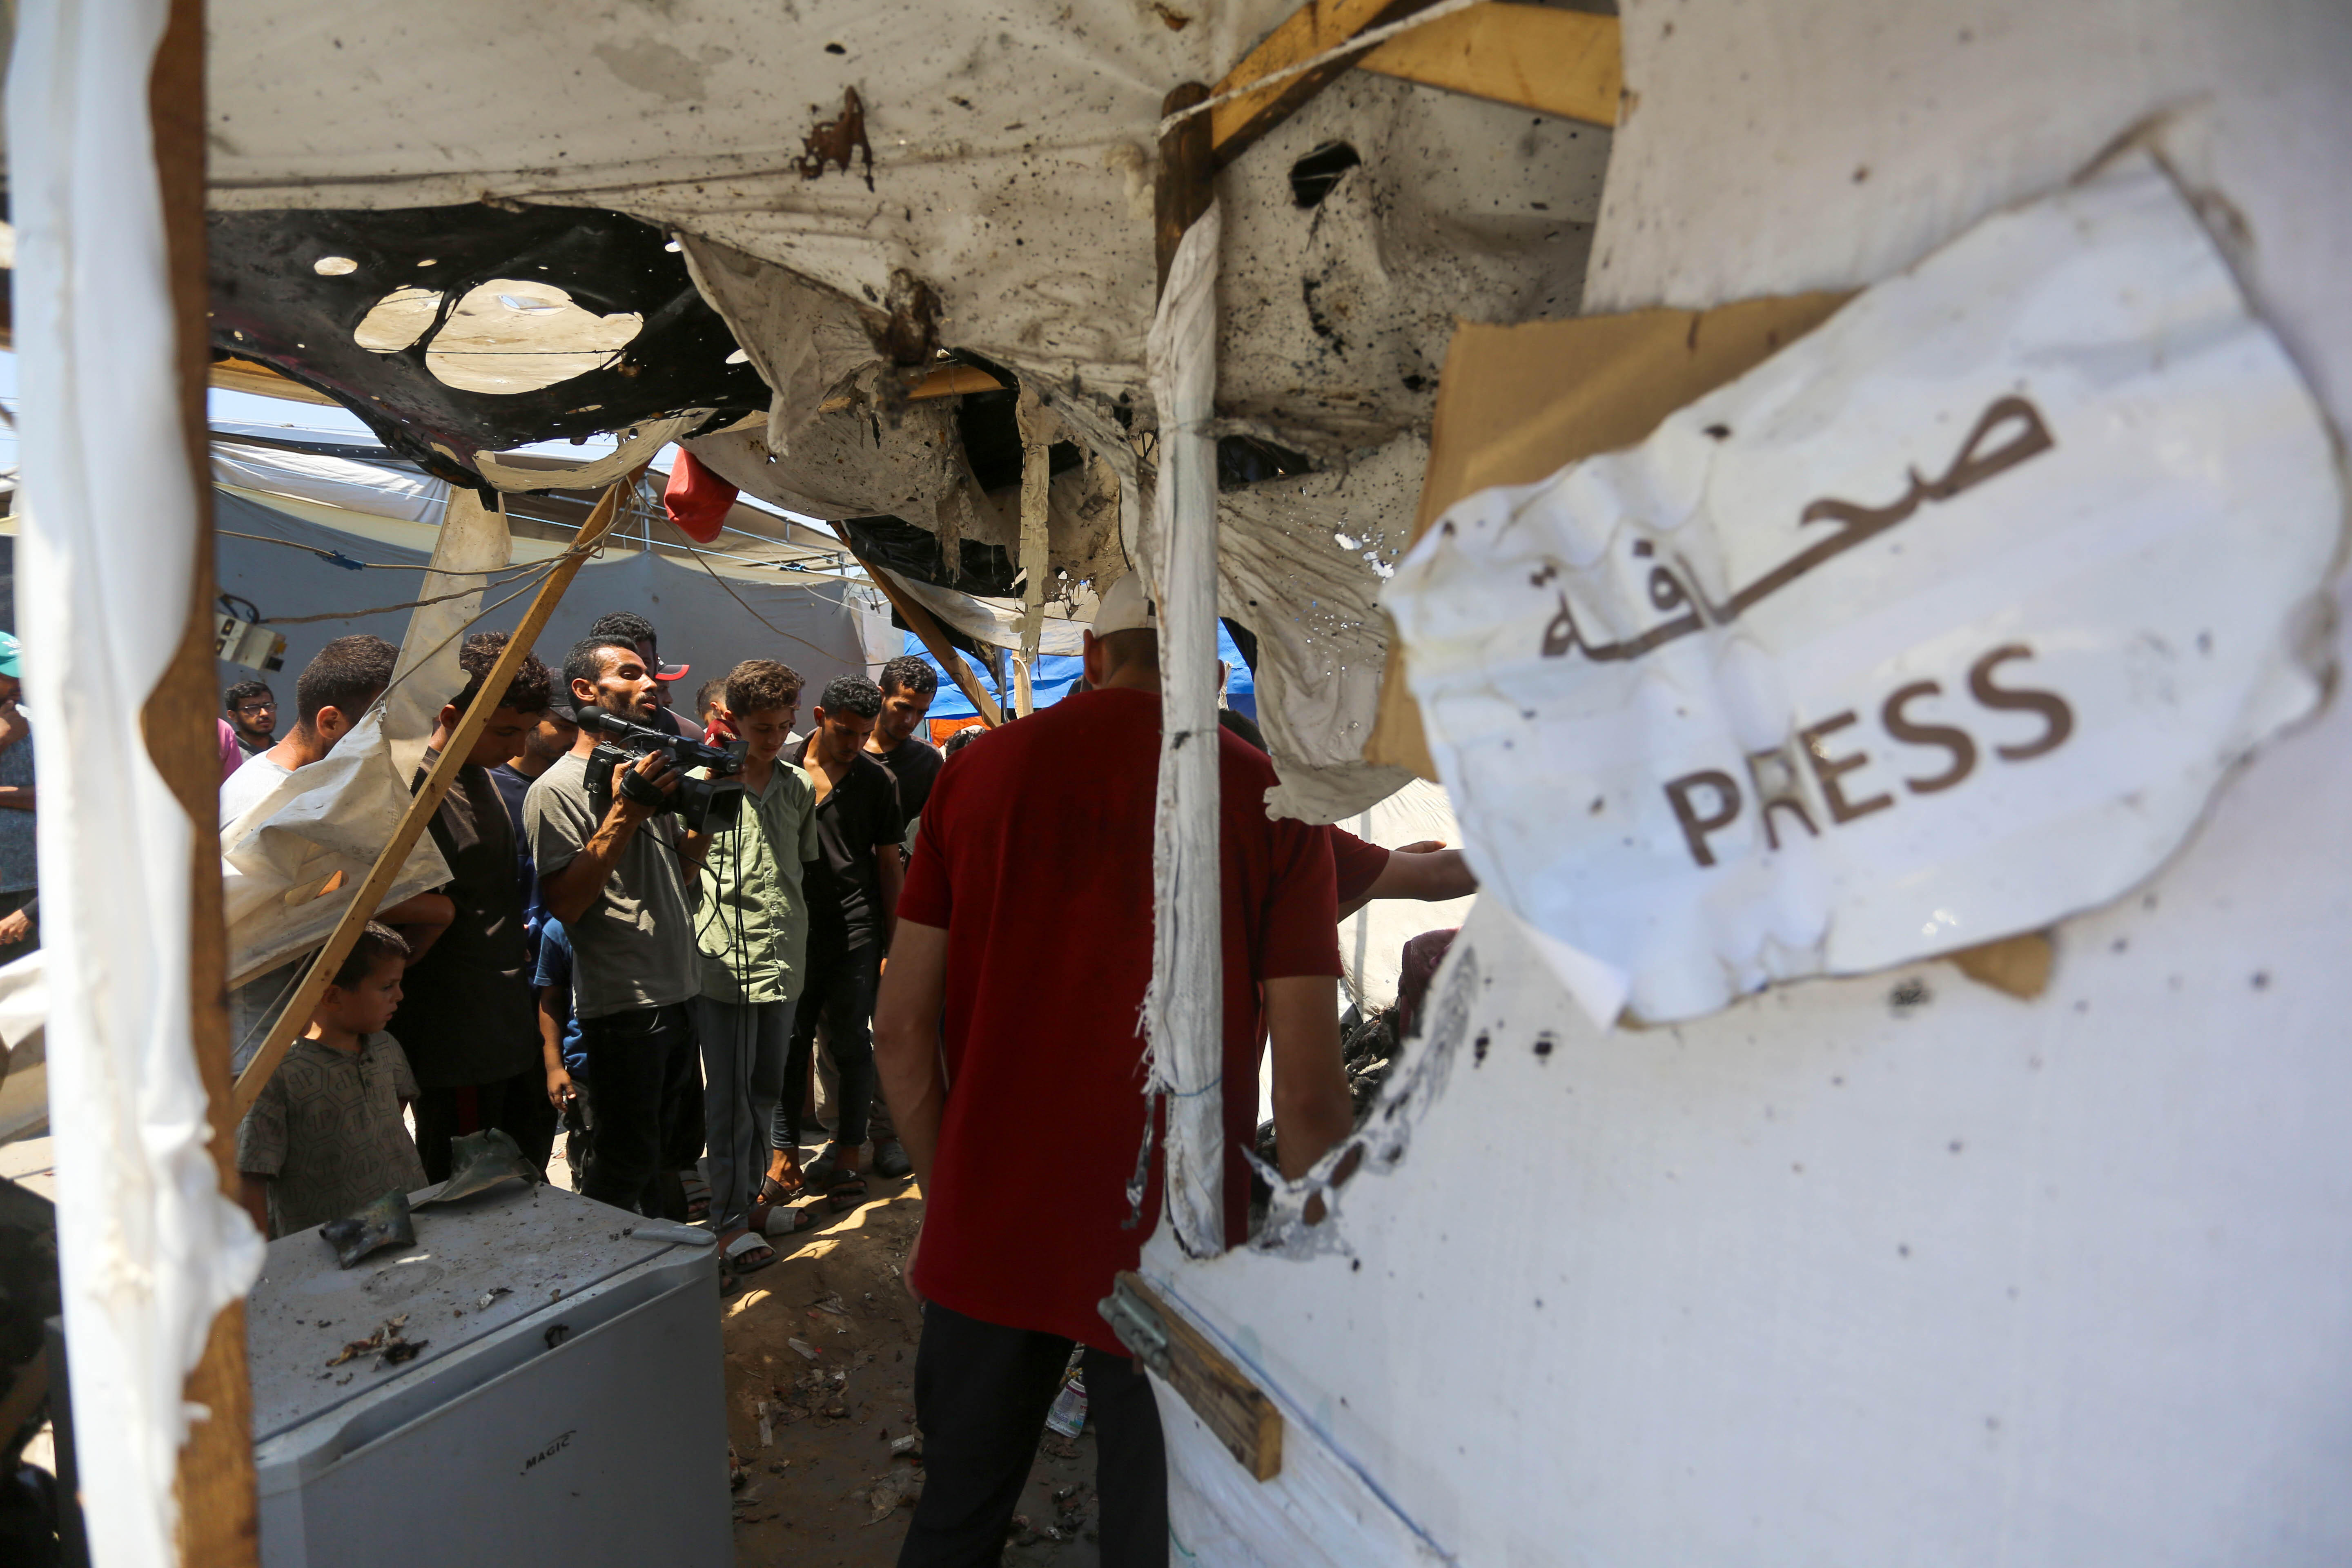 Blick auf ein zerstörtes Zelt in Gaza. Im Vordergrund hängt ein Zetell auf dem in arabischer und englischer Schrift "Presse" steht. Im Hintergrund sind Journalisten zu sehen.